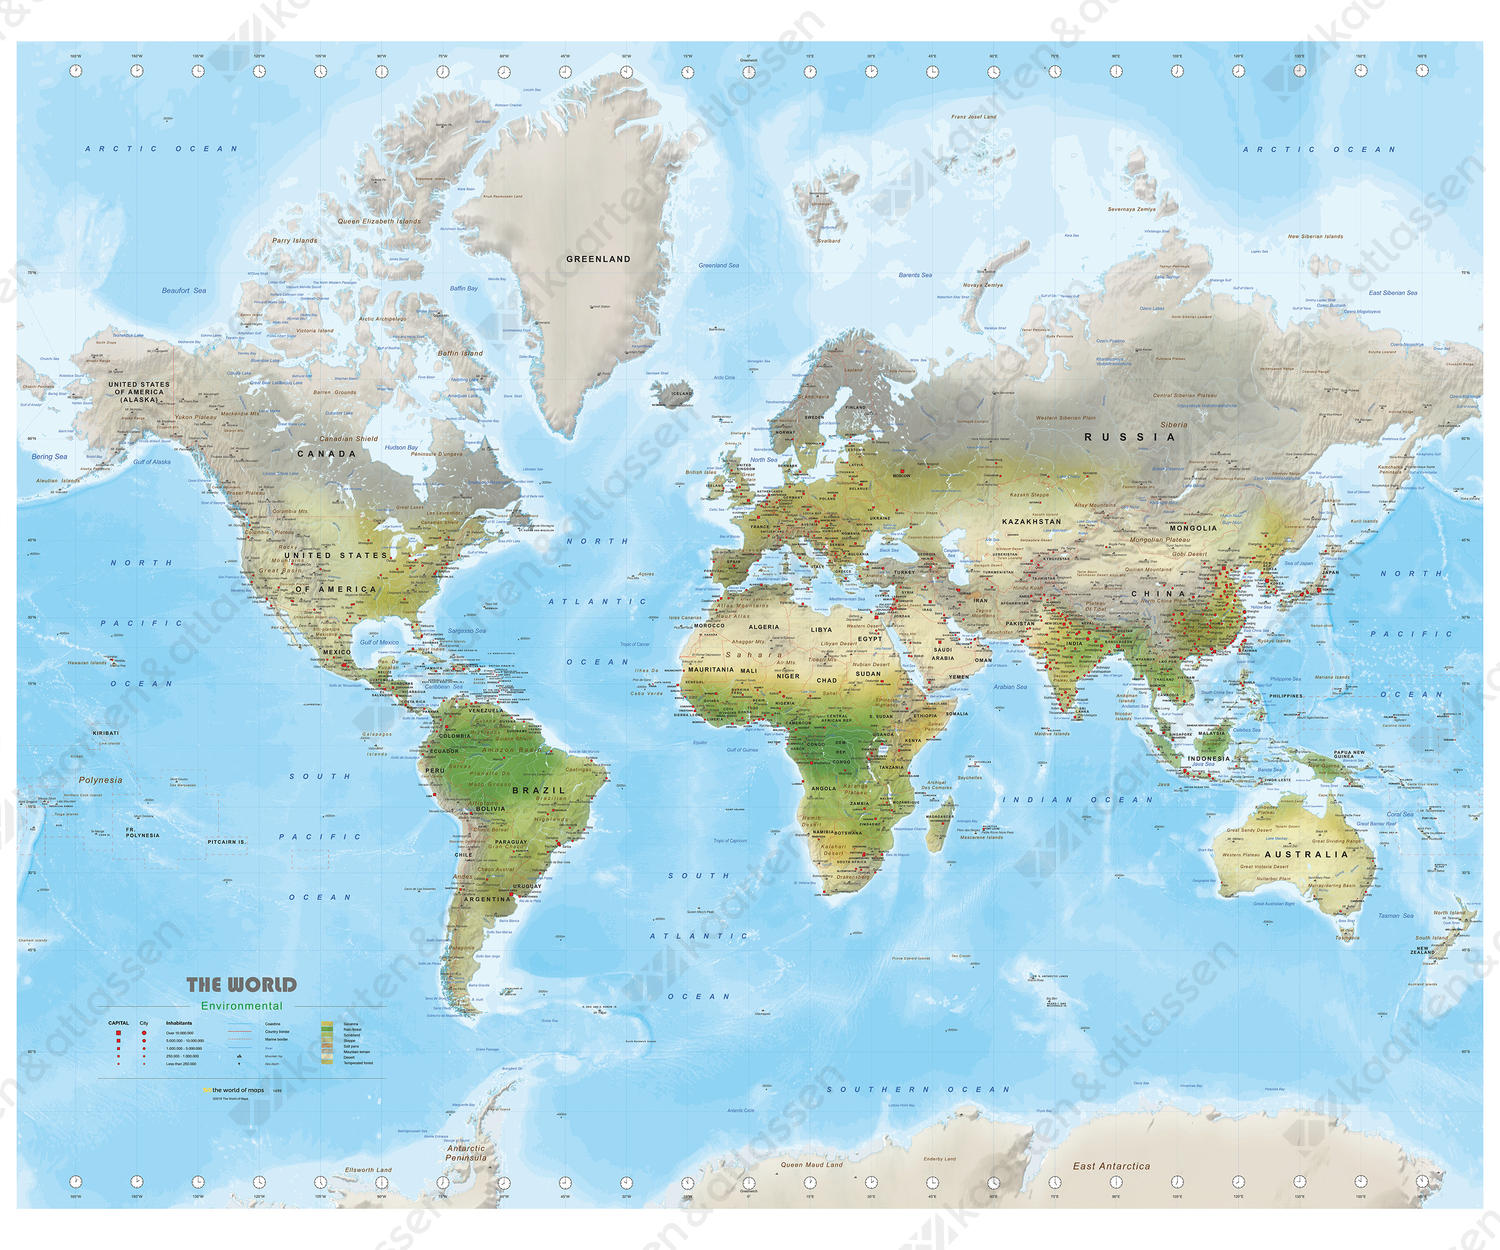 Environmental wereldkaart met veel details